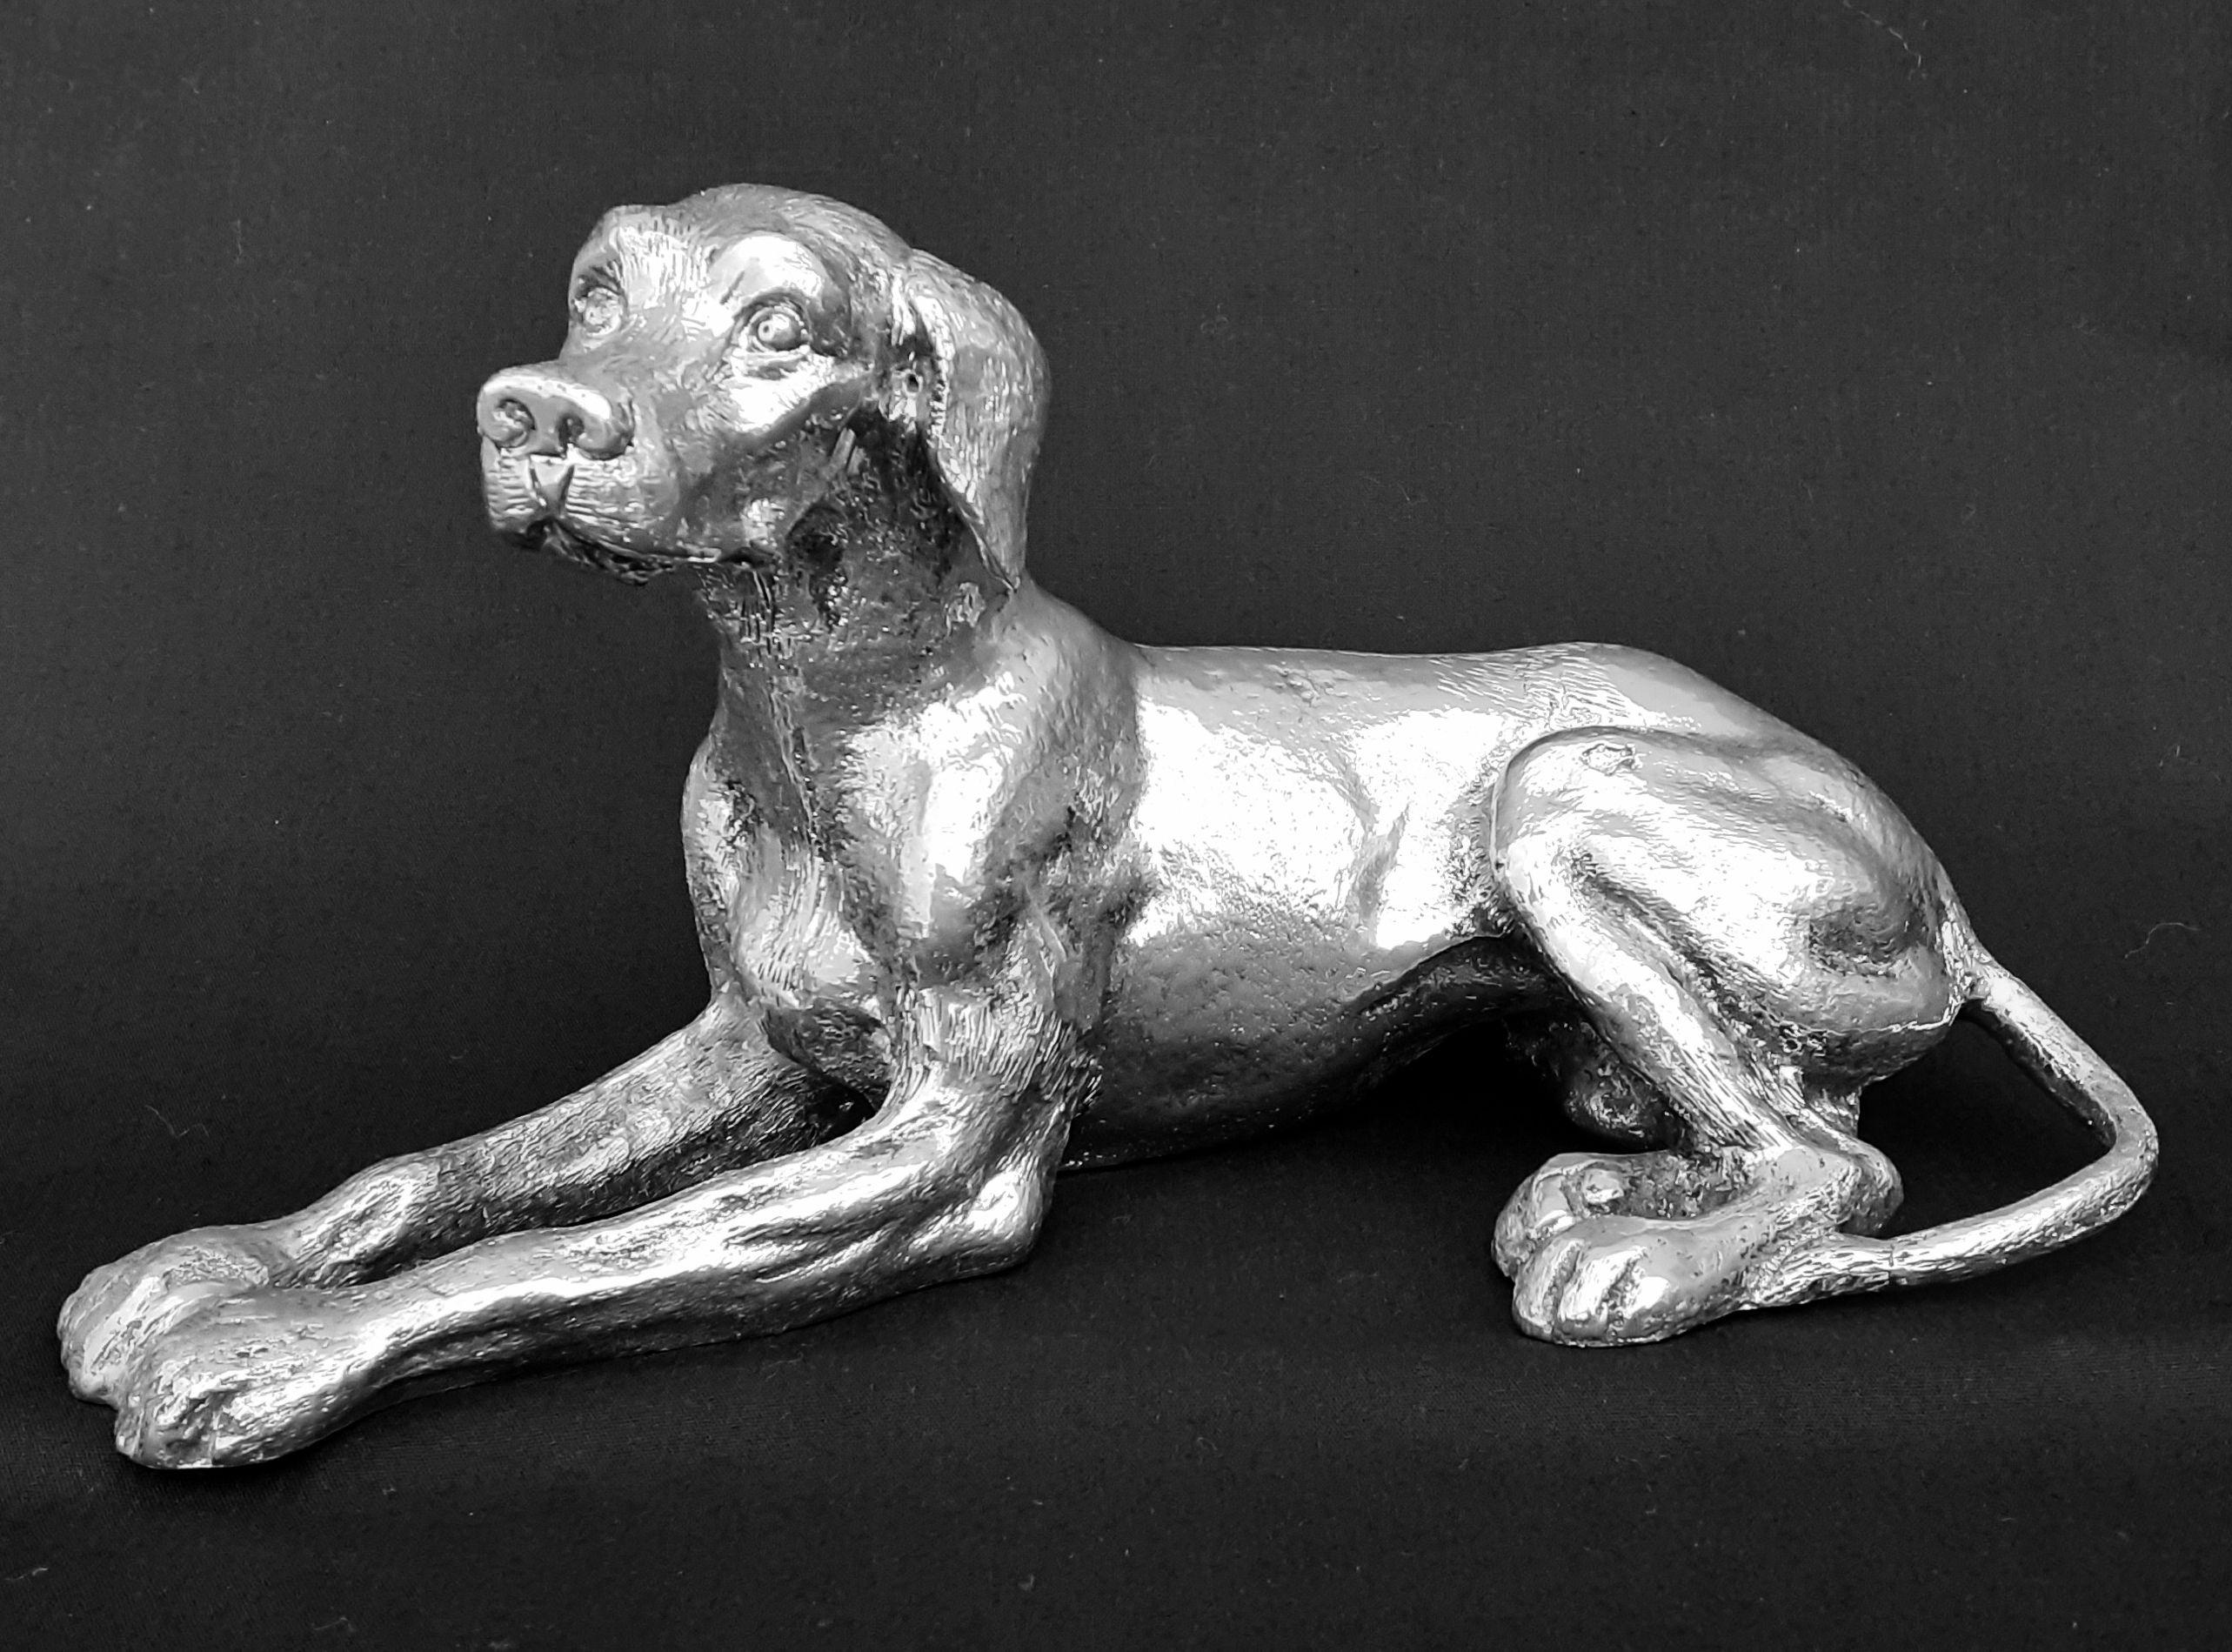 Erstaunlich und selten Authentic GUCCI Bronze

Form eines liegenden Hundes

Vintage-Artikel aus den 70/80er Jahren

Hergestellt aus Bronze

Farbgebung: silbern

